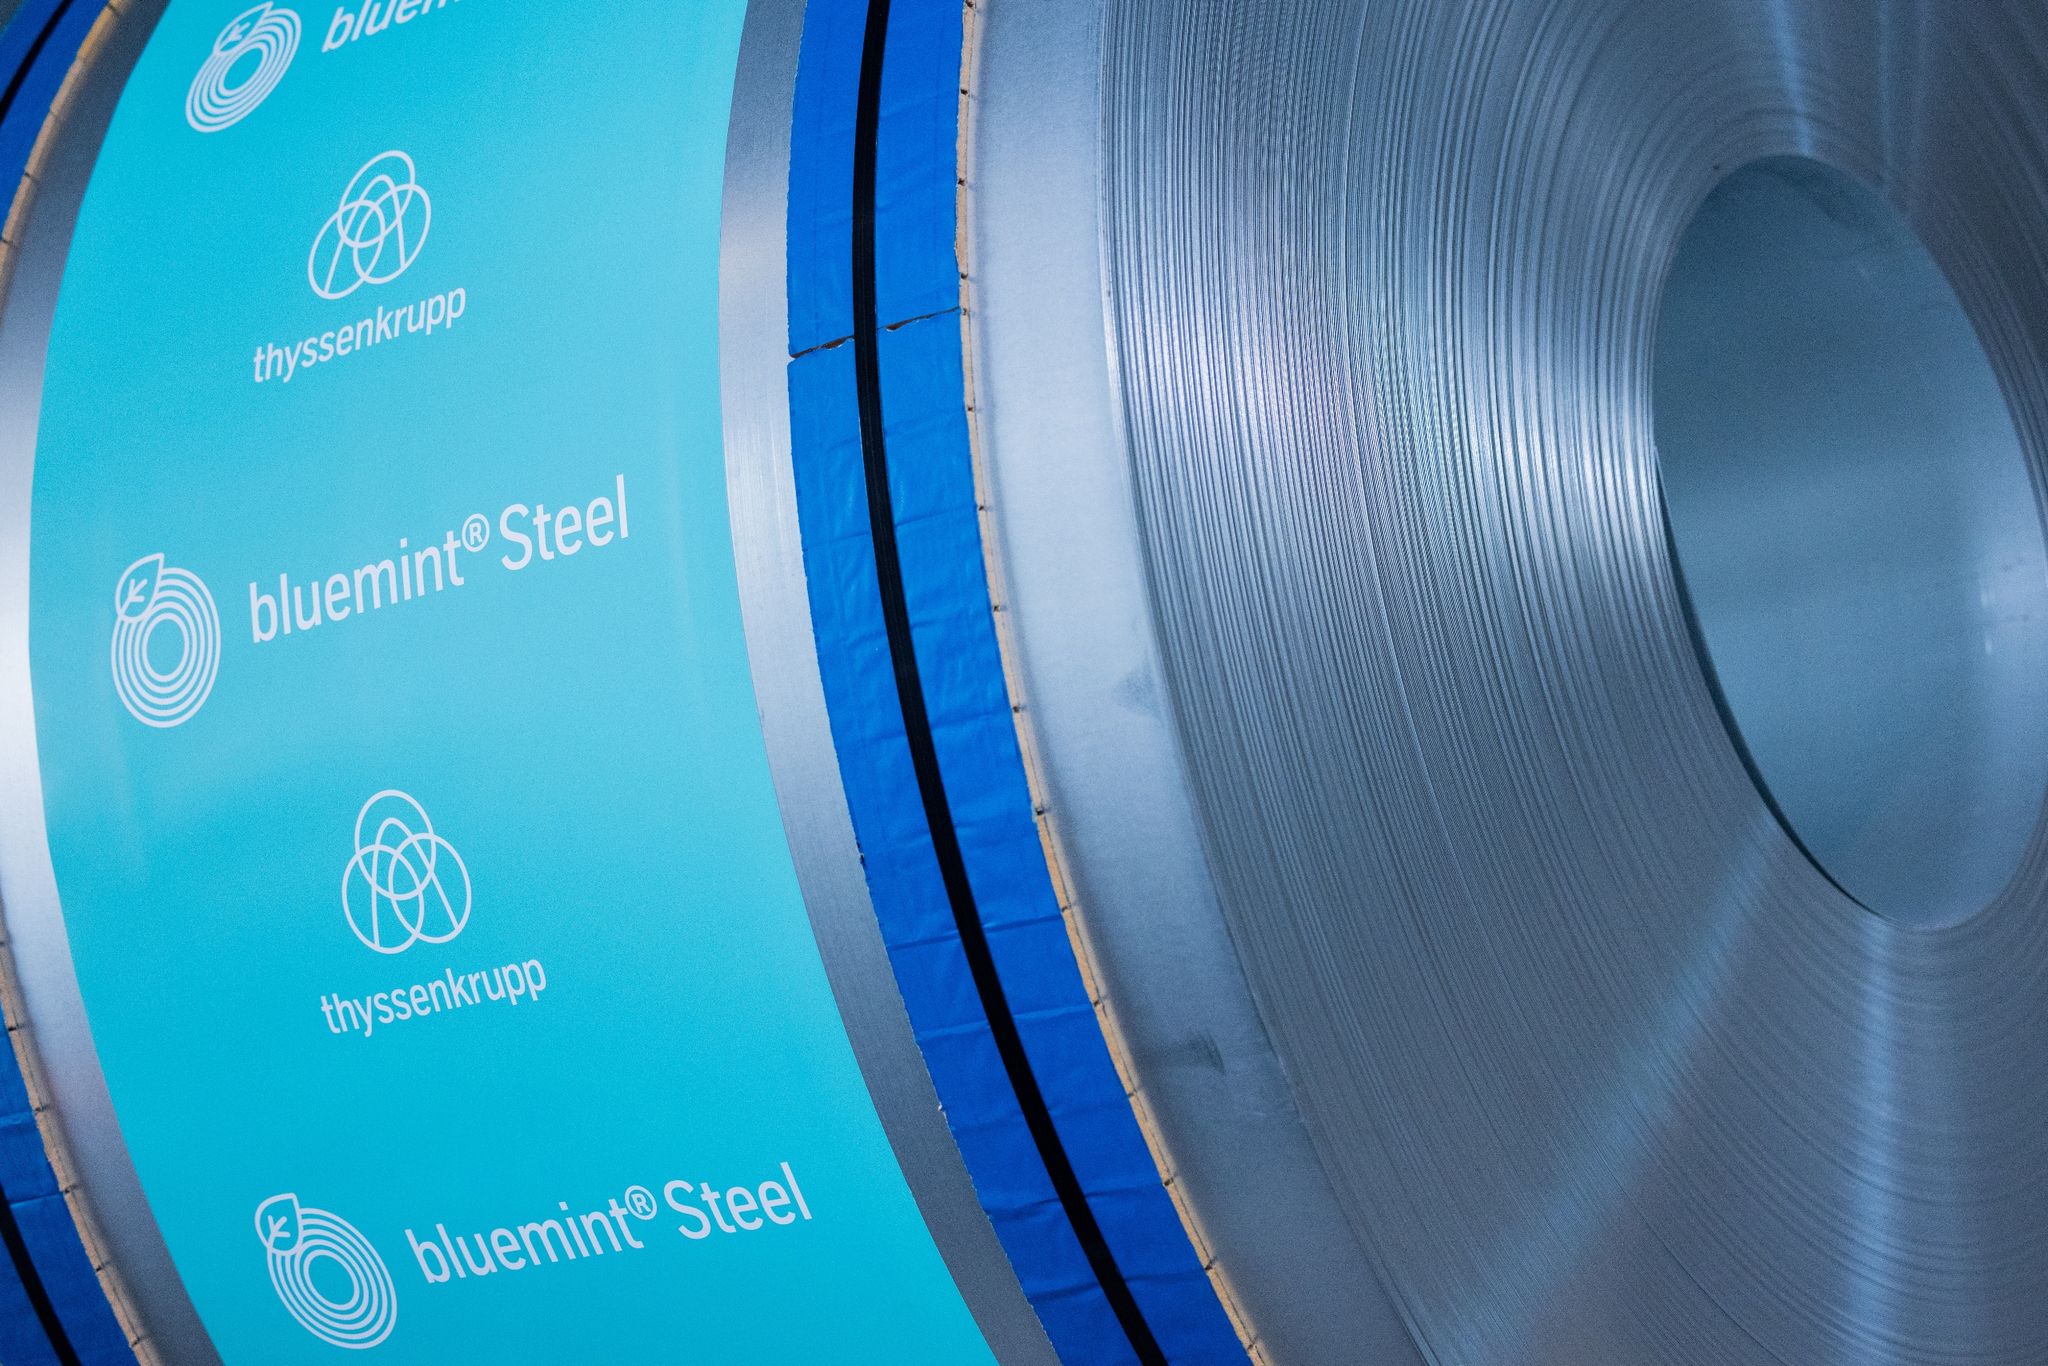 Sogenannter bluemint Steel, nach Werksangaben ein Flachstahl mit reduzierter CO2-Intensität, steht auf dem Werksgelände von Thyssenkrupp.